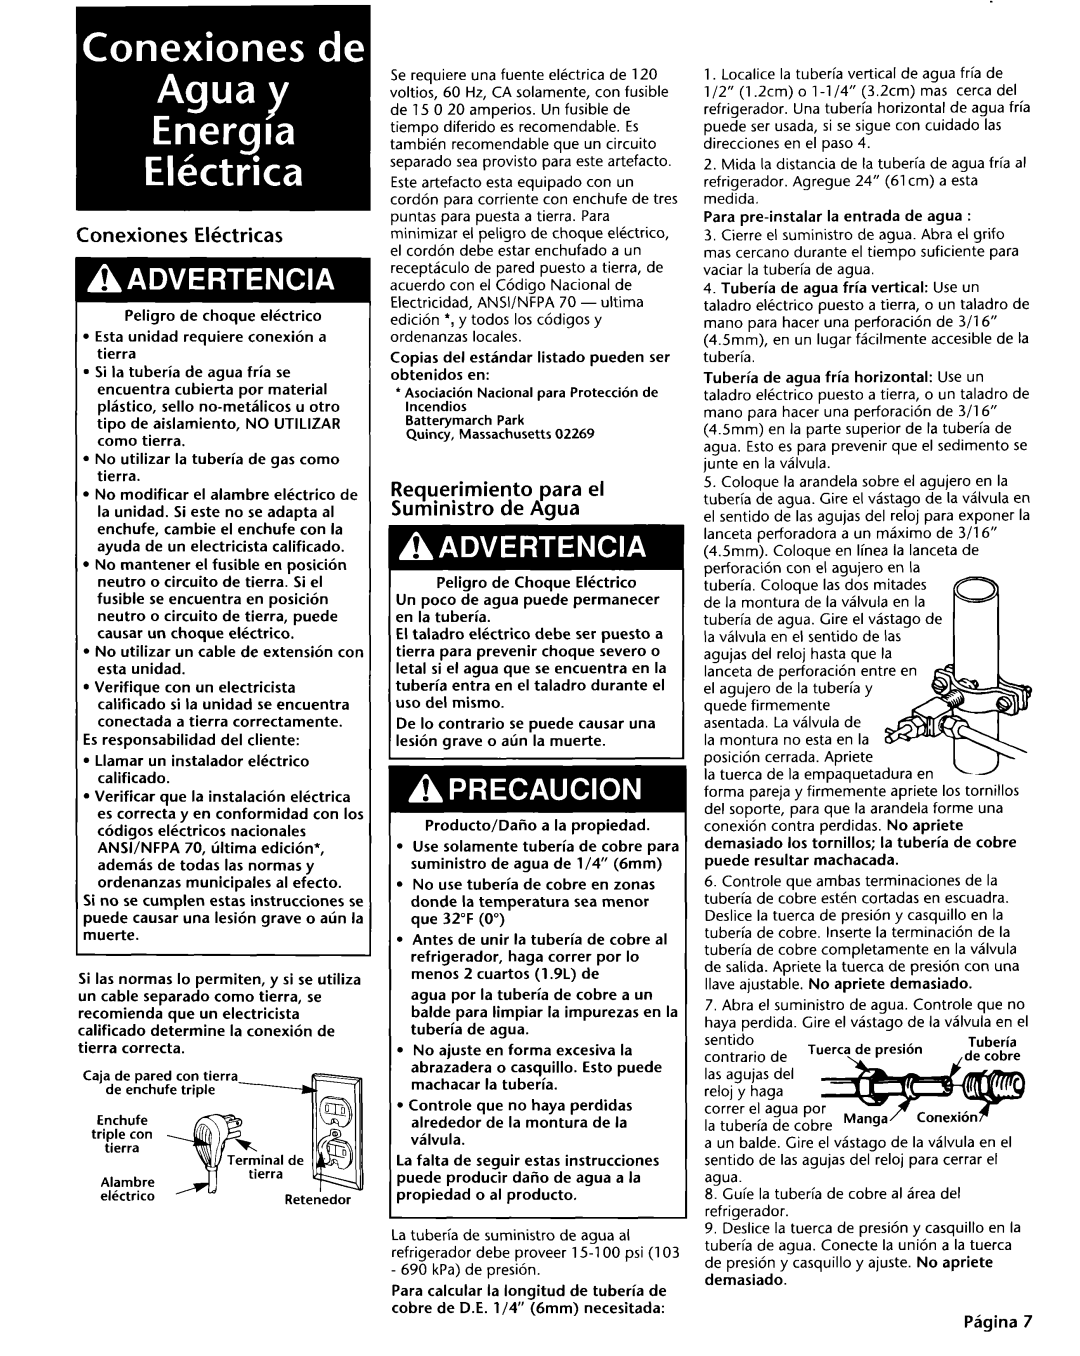 KitchenAid 2004022 installation instructions Conexiones Ektricas, Requerimiento para el Suministro de Aqua 